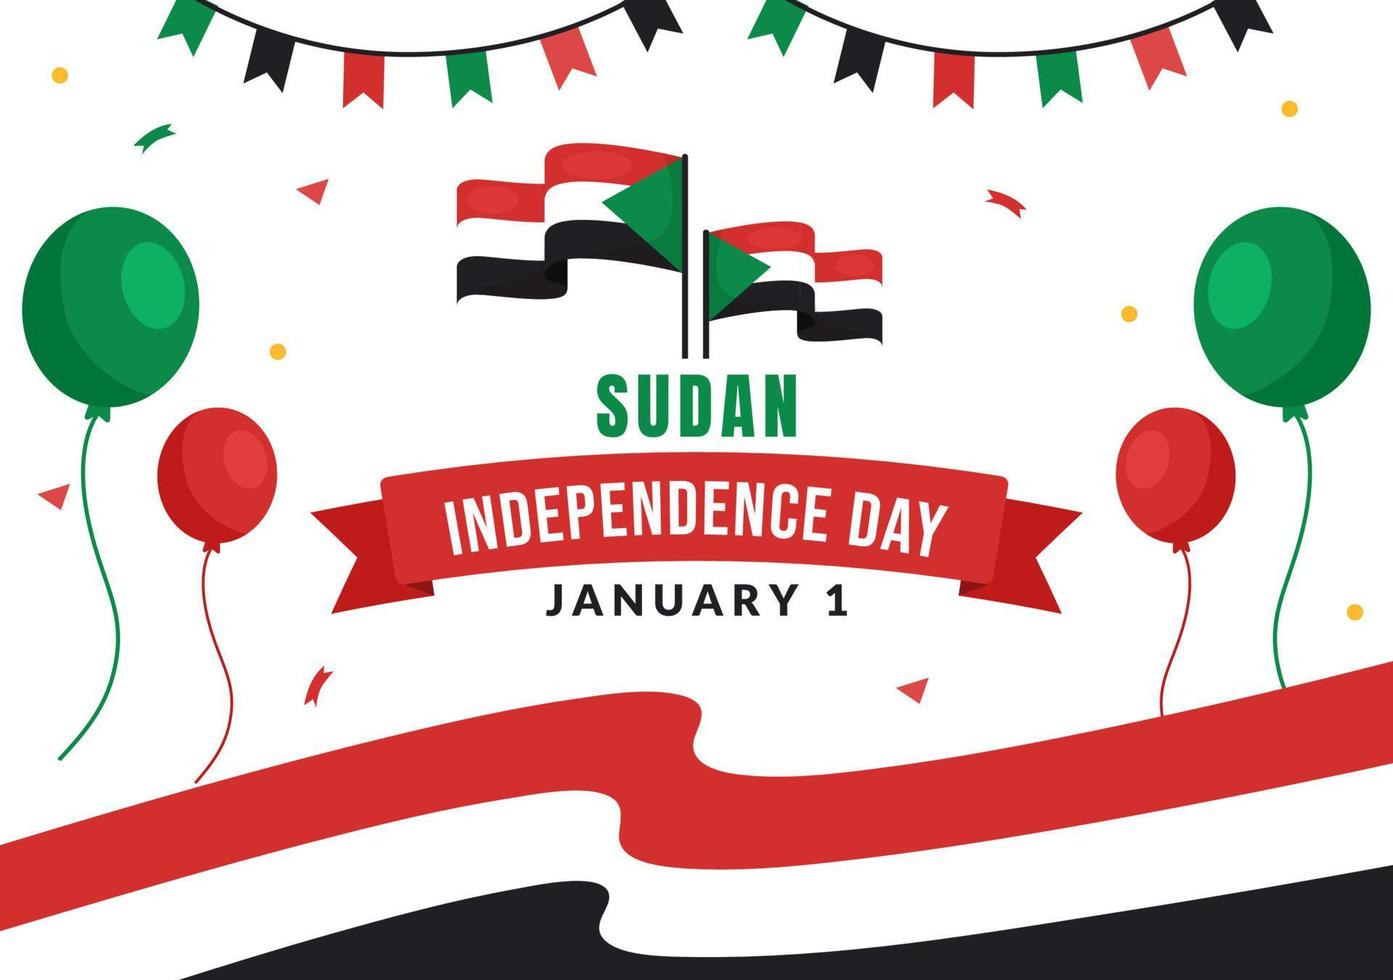 día de la independencia de sudán el 1 de enero con banderas y fiesta nacional sudanesa en fondo de dibujos animados planos plantillas dibujadas a mano ilustración vector